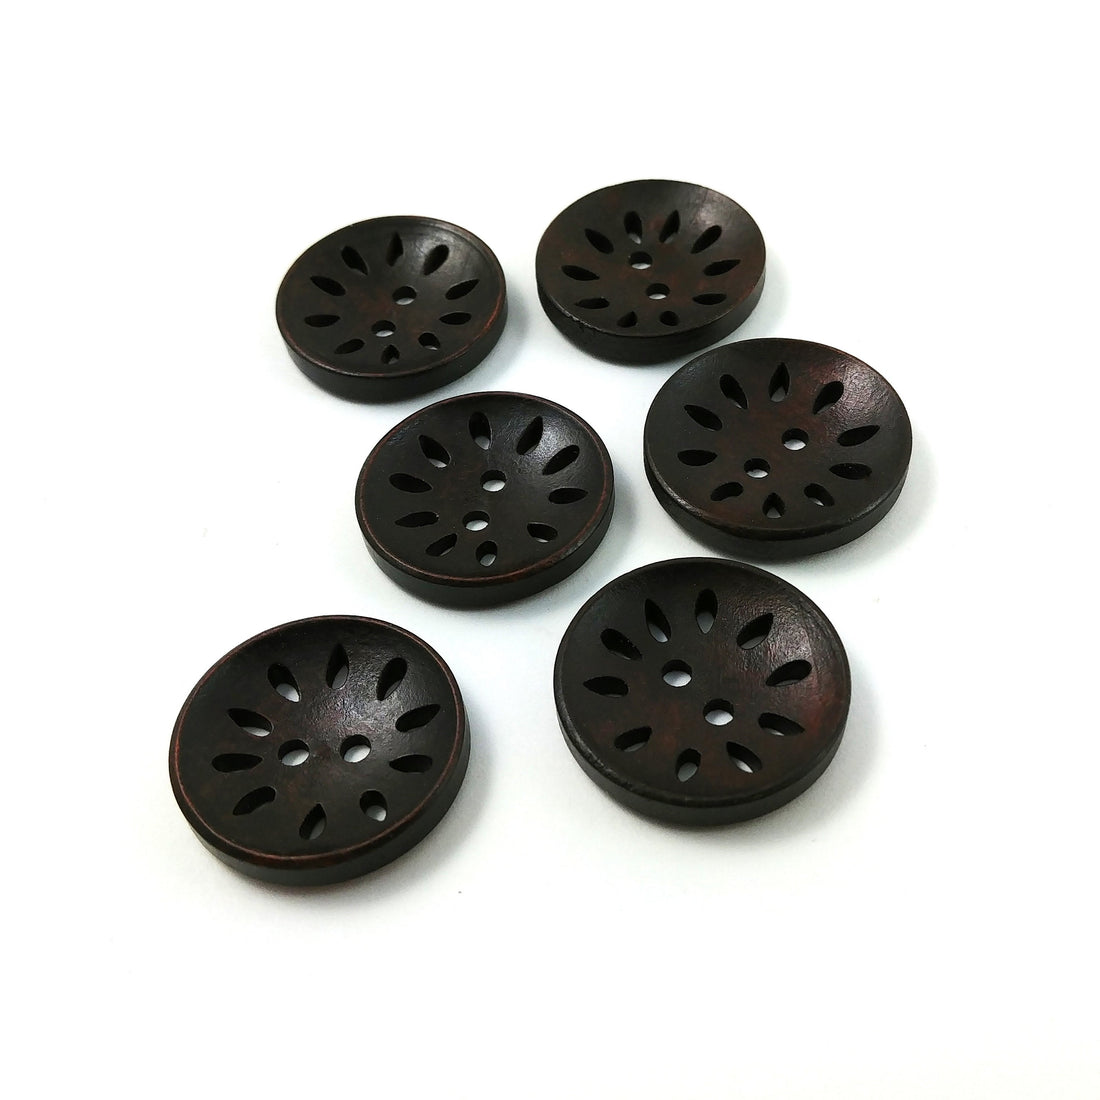 6 hollow wooden buttons 25mm